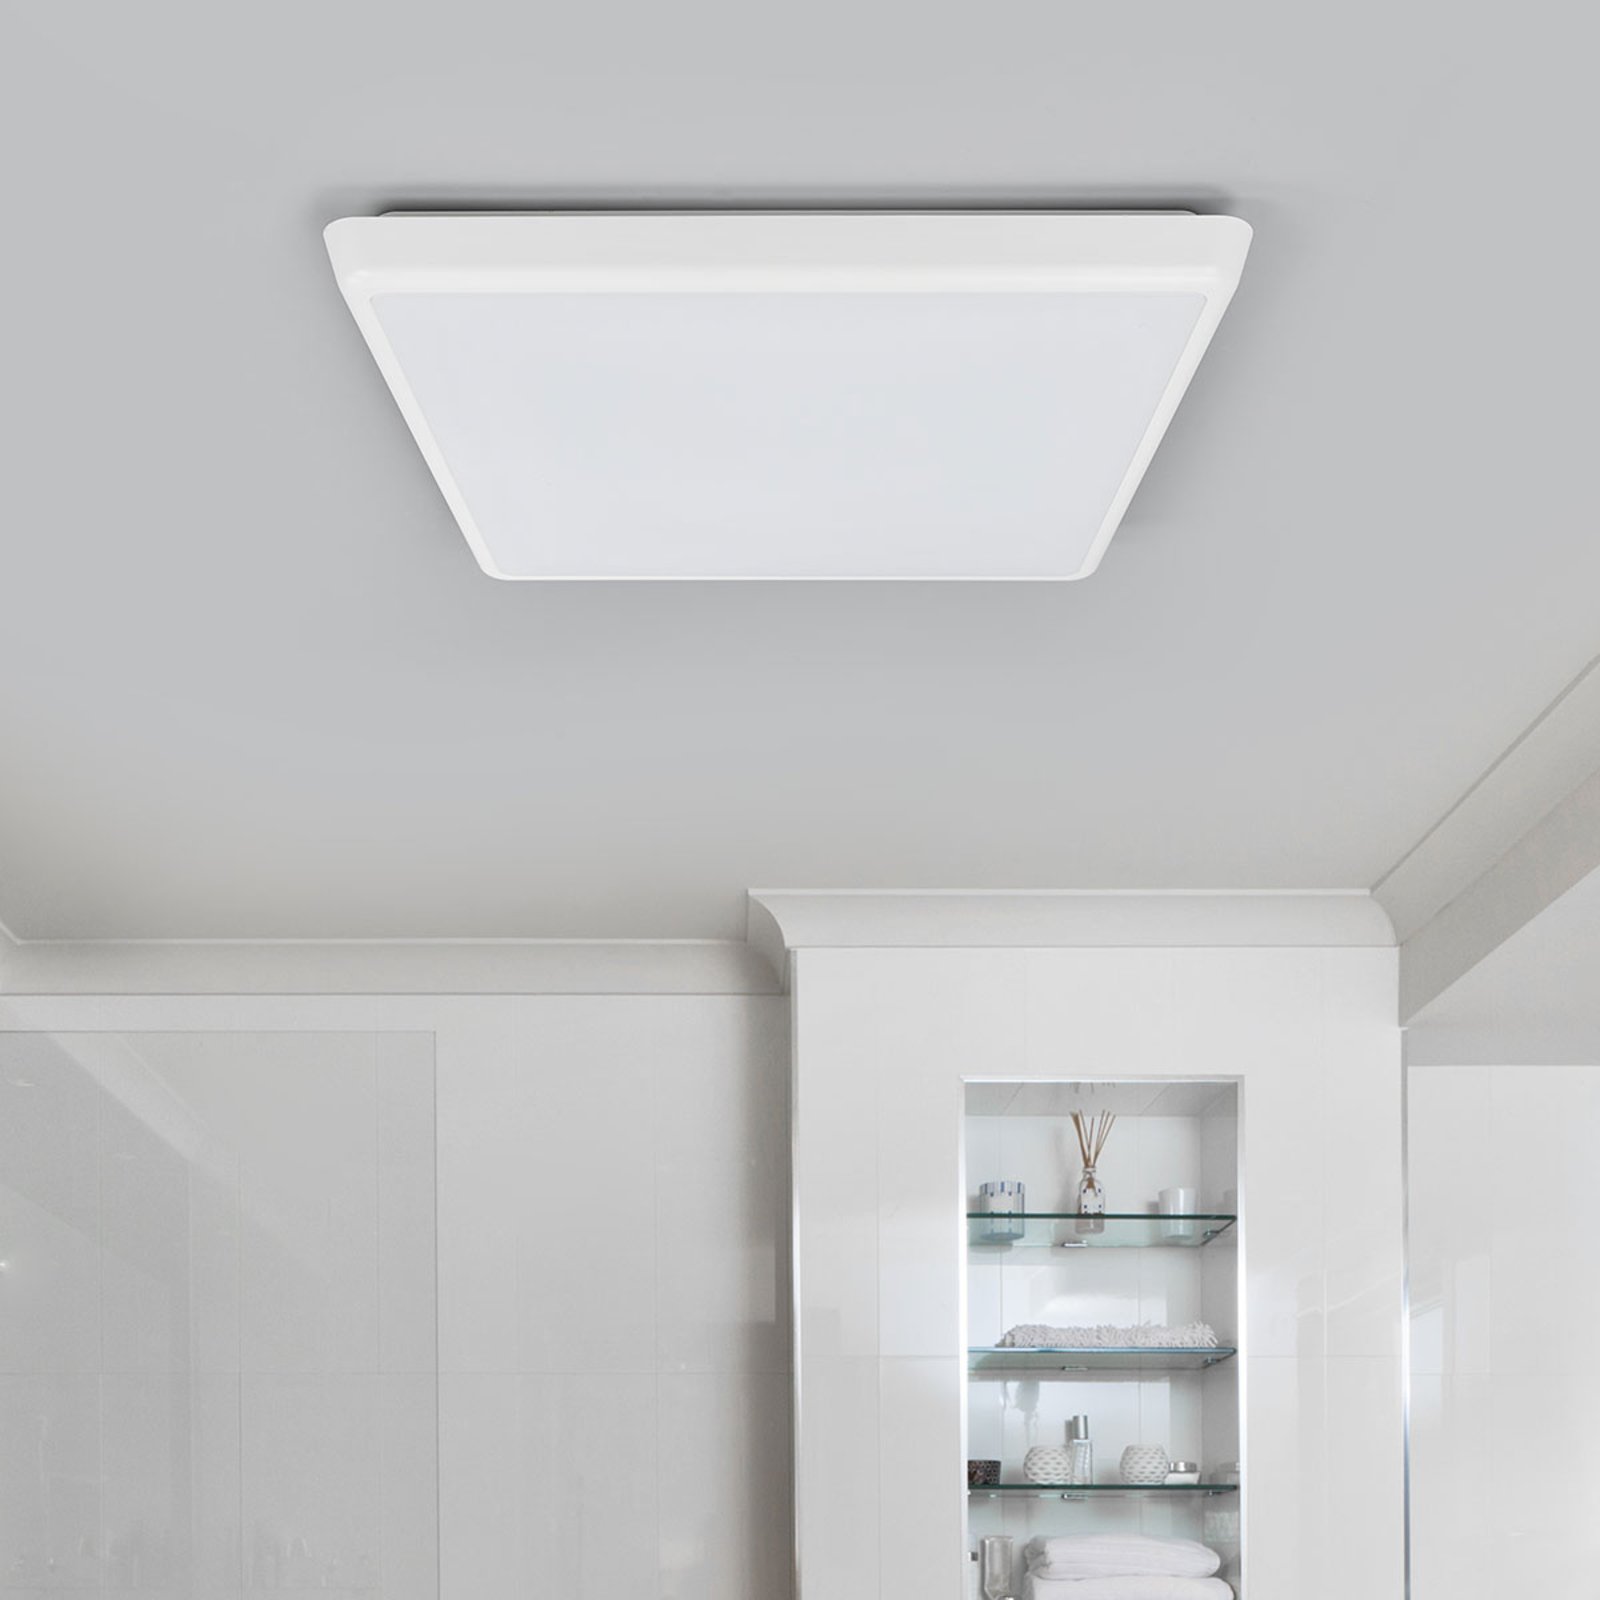 LED ceiling light Augustin, angular, 40 x 40 cm